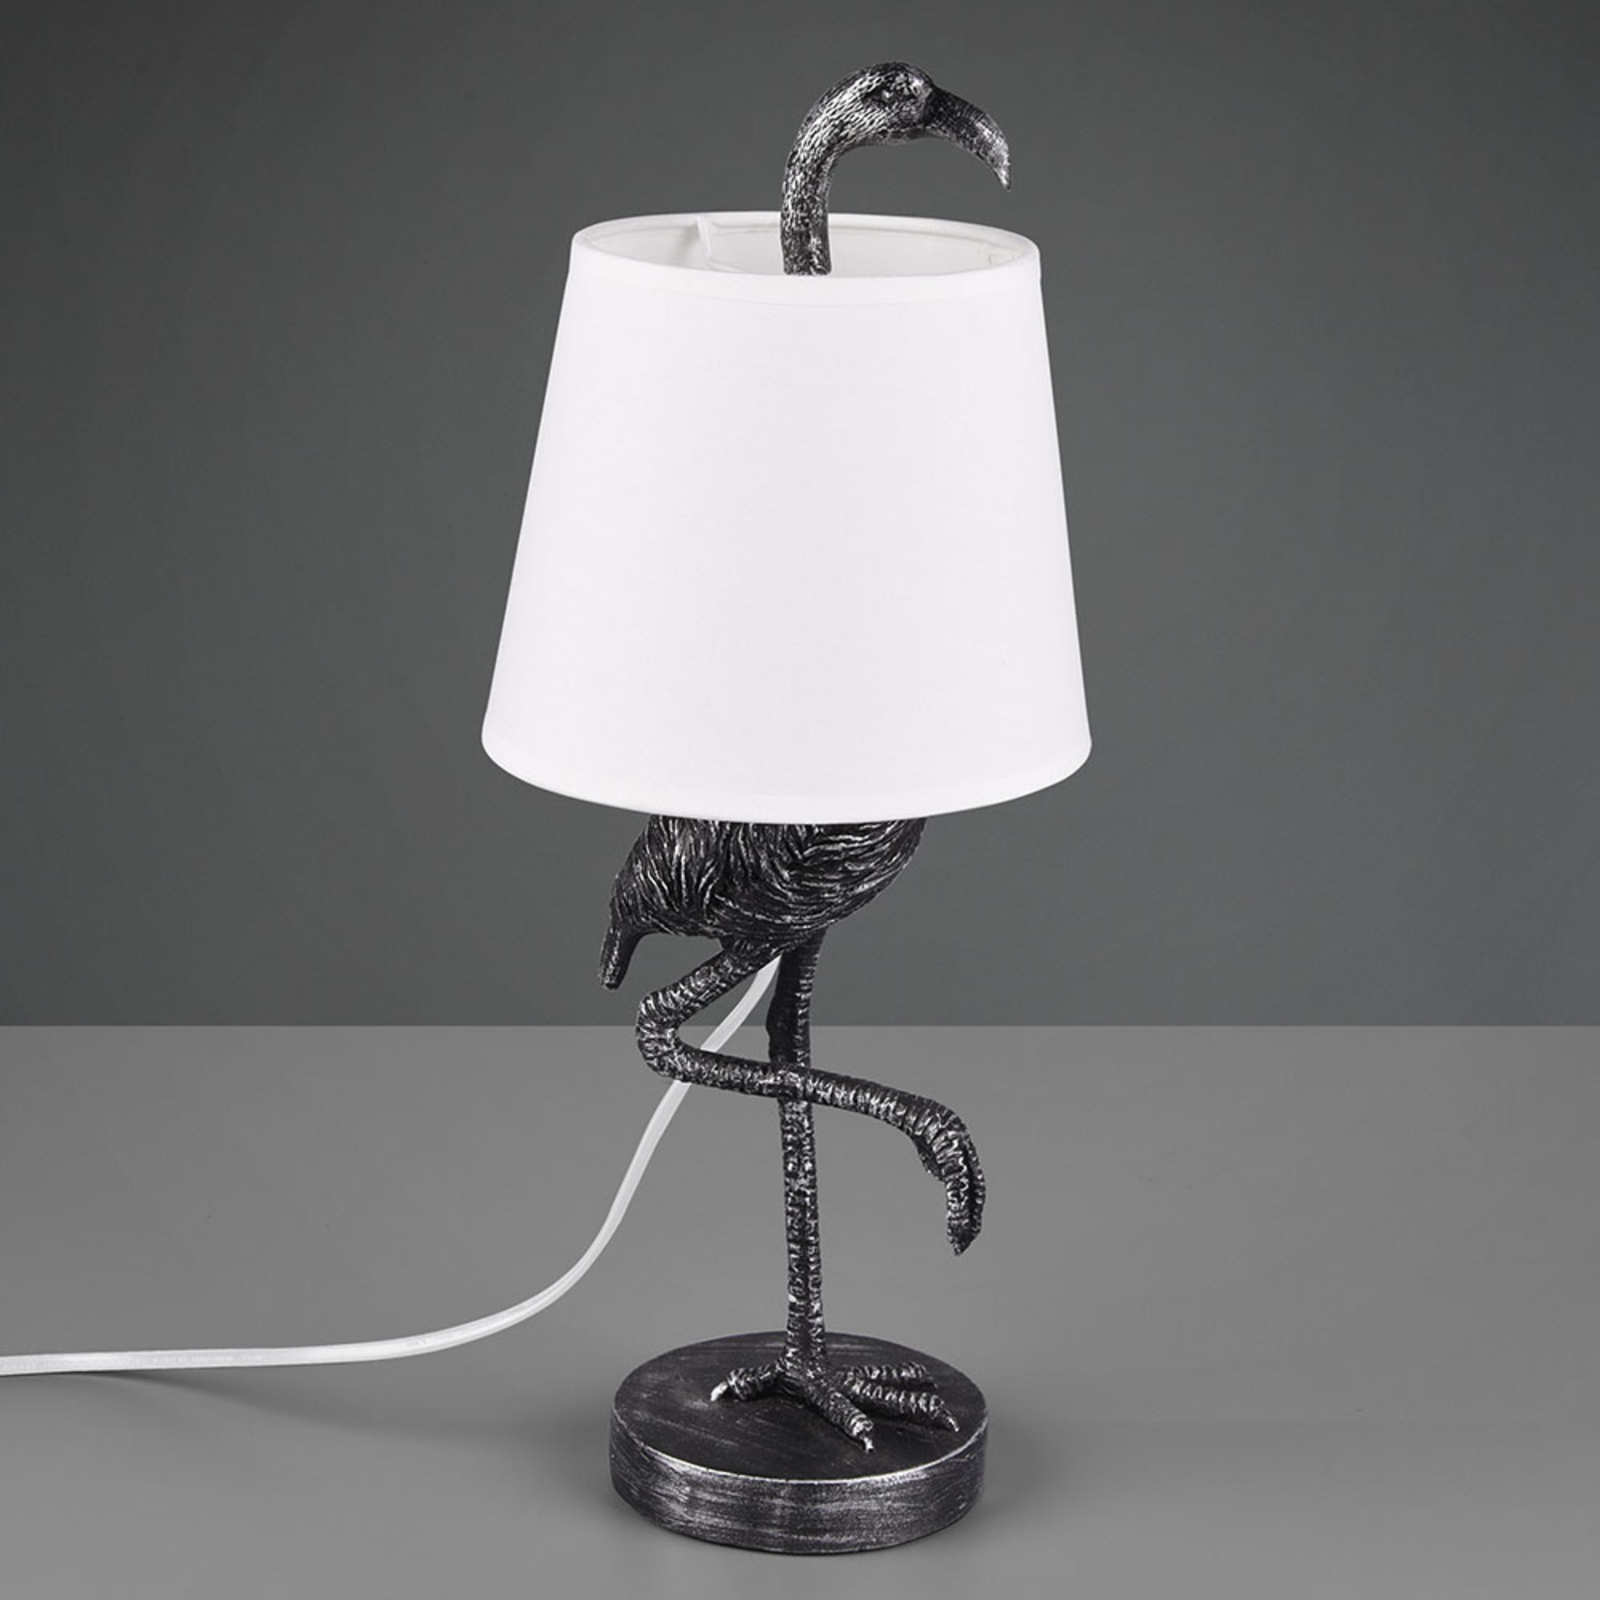 Tafellamp Lola met flamingo-figuur, zilver/wit